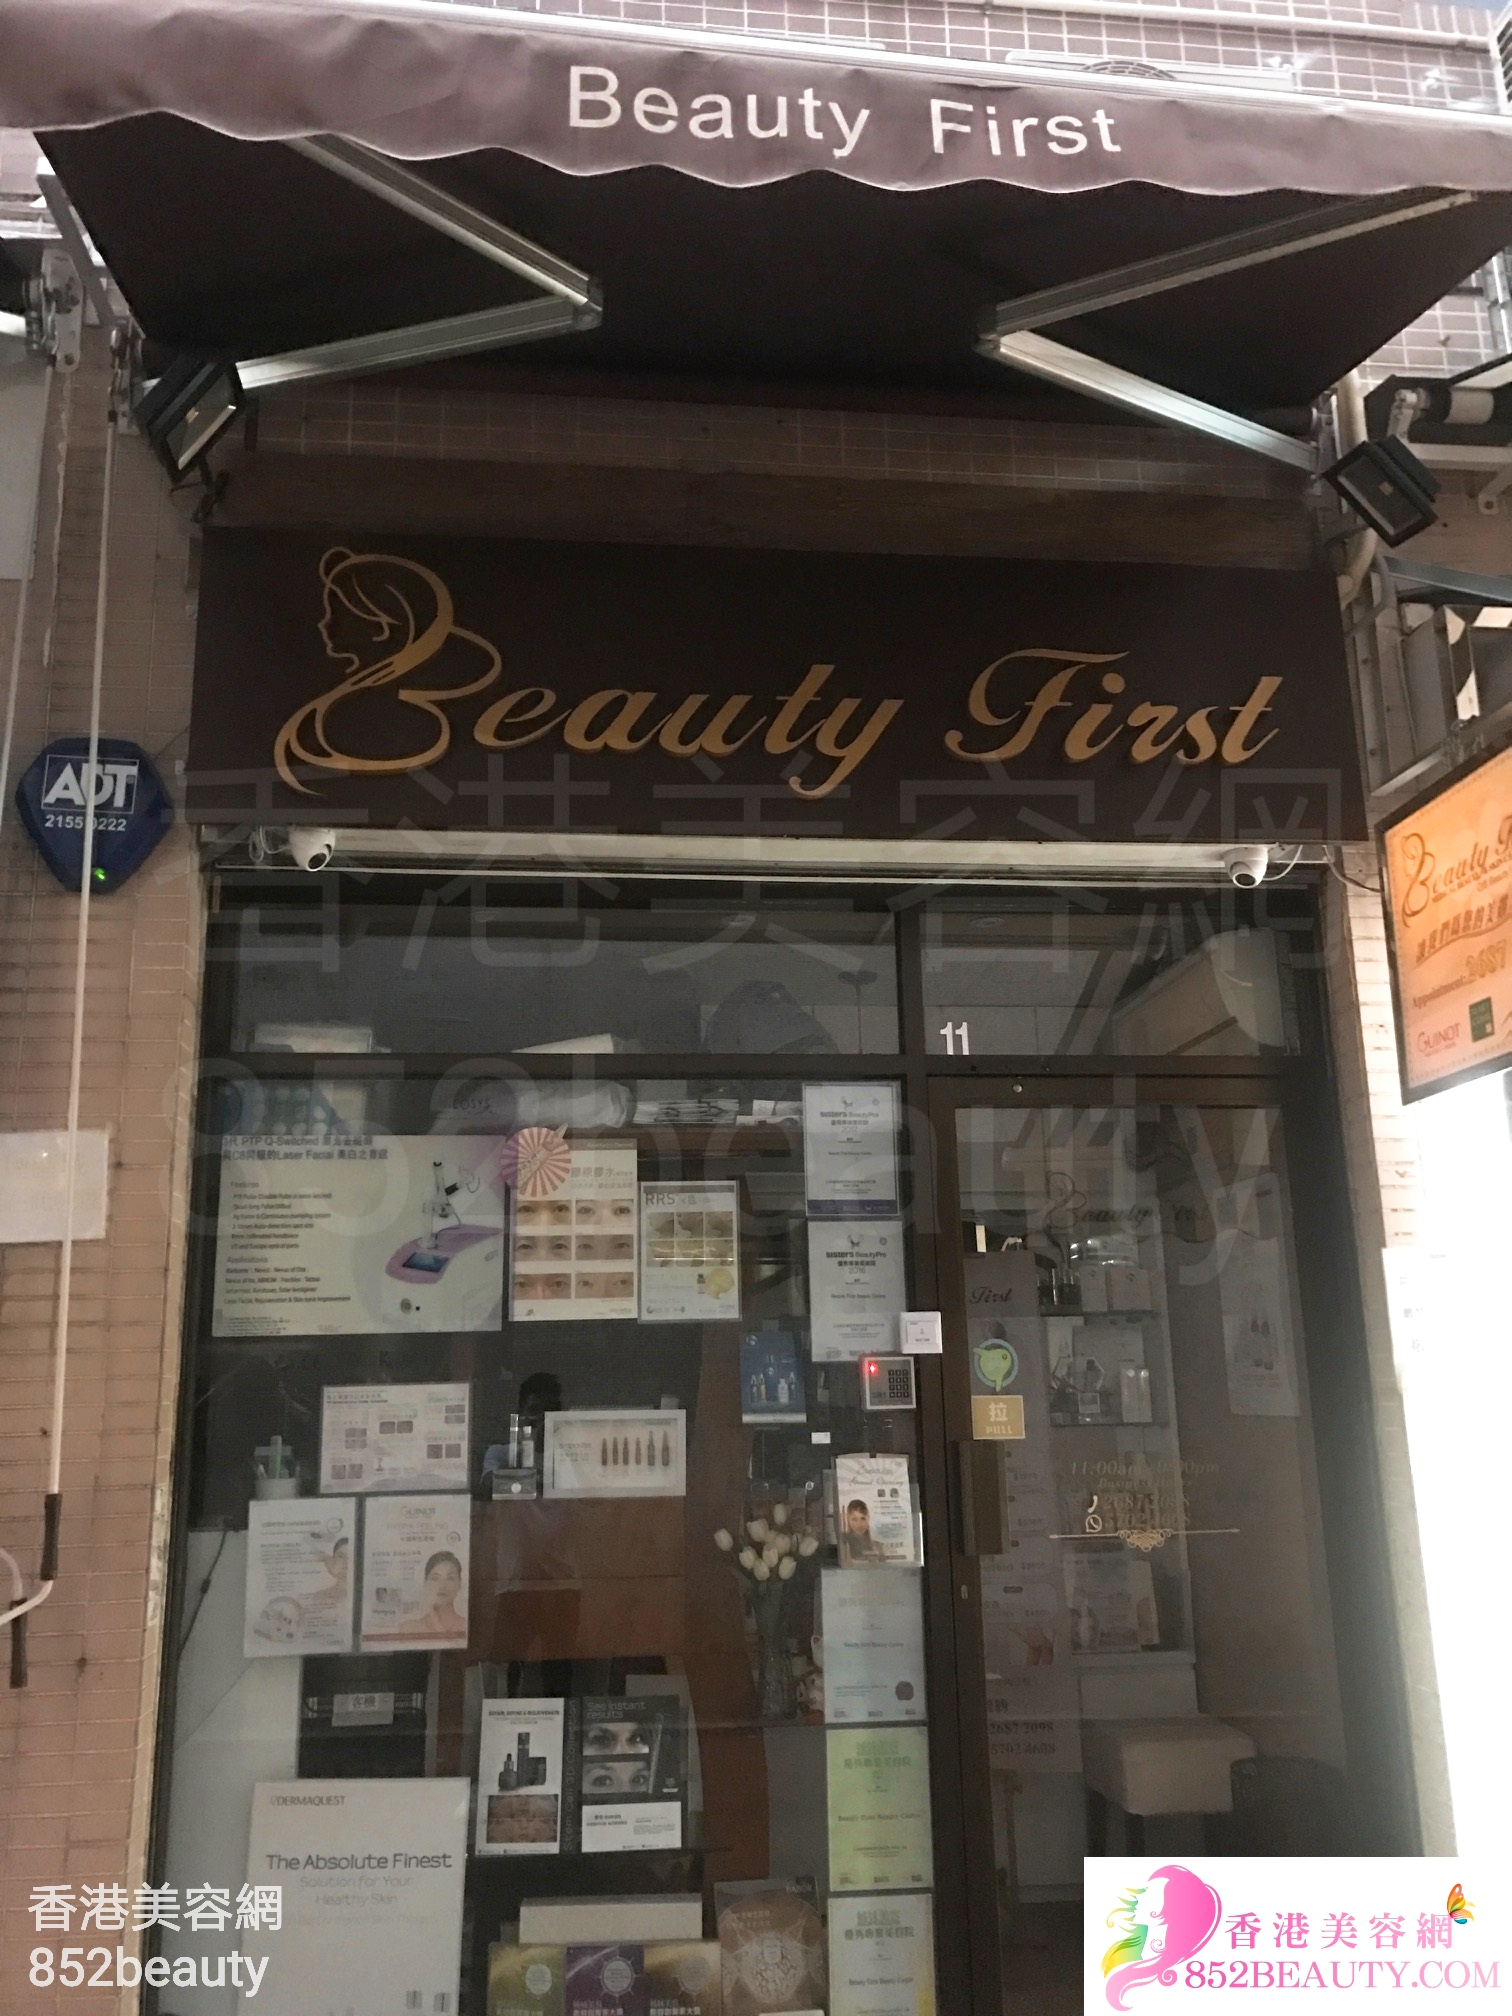 眼部护理: Beauty First (嘉豐花園)